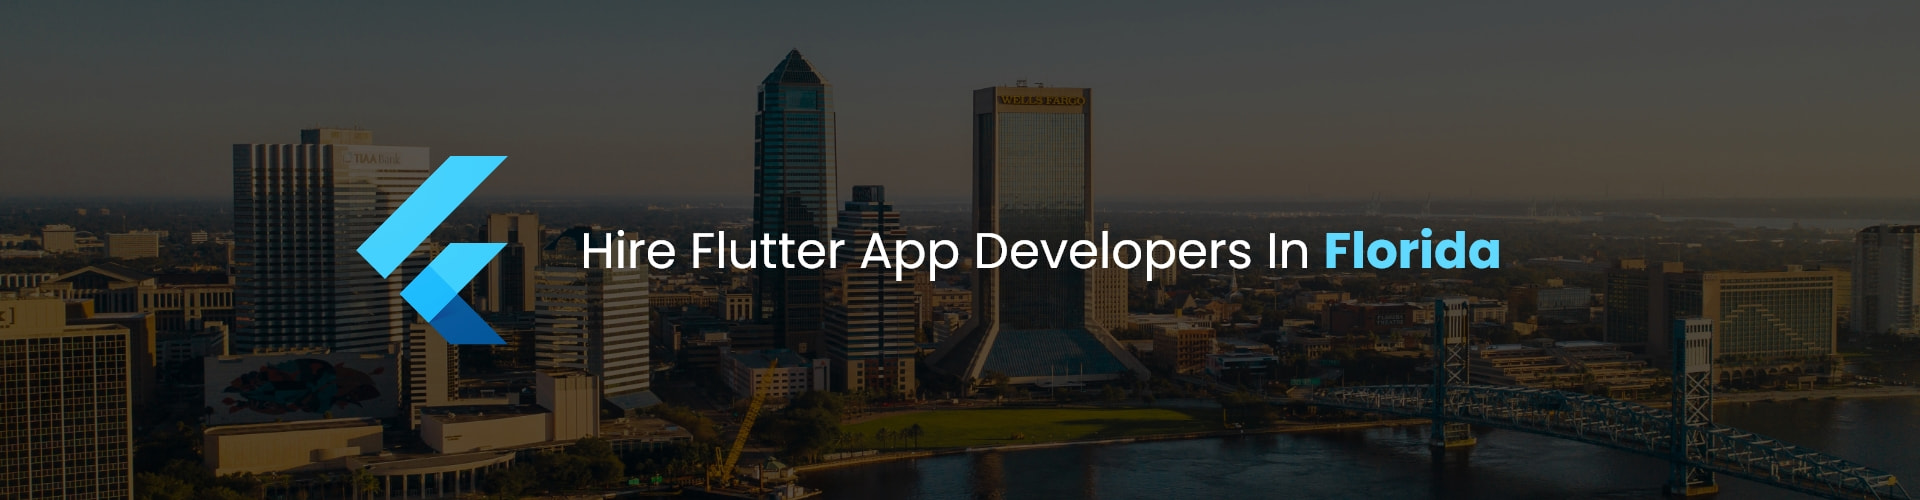 hire flutter app developers in florida